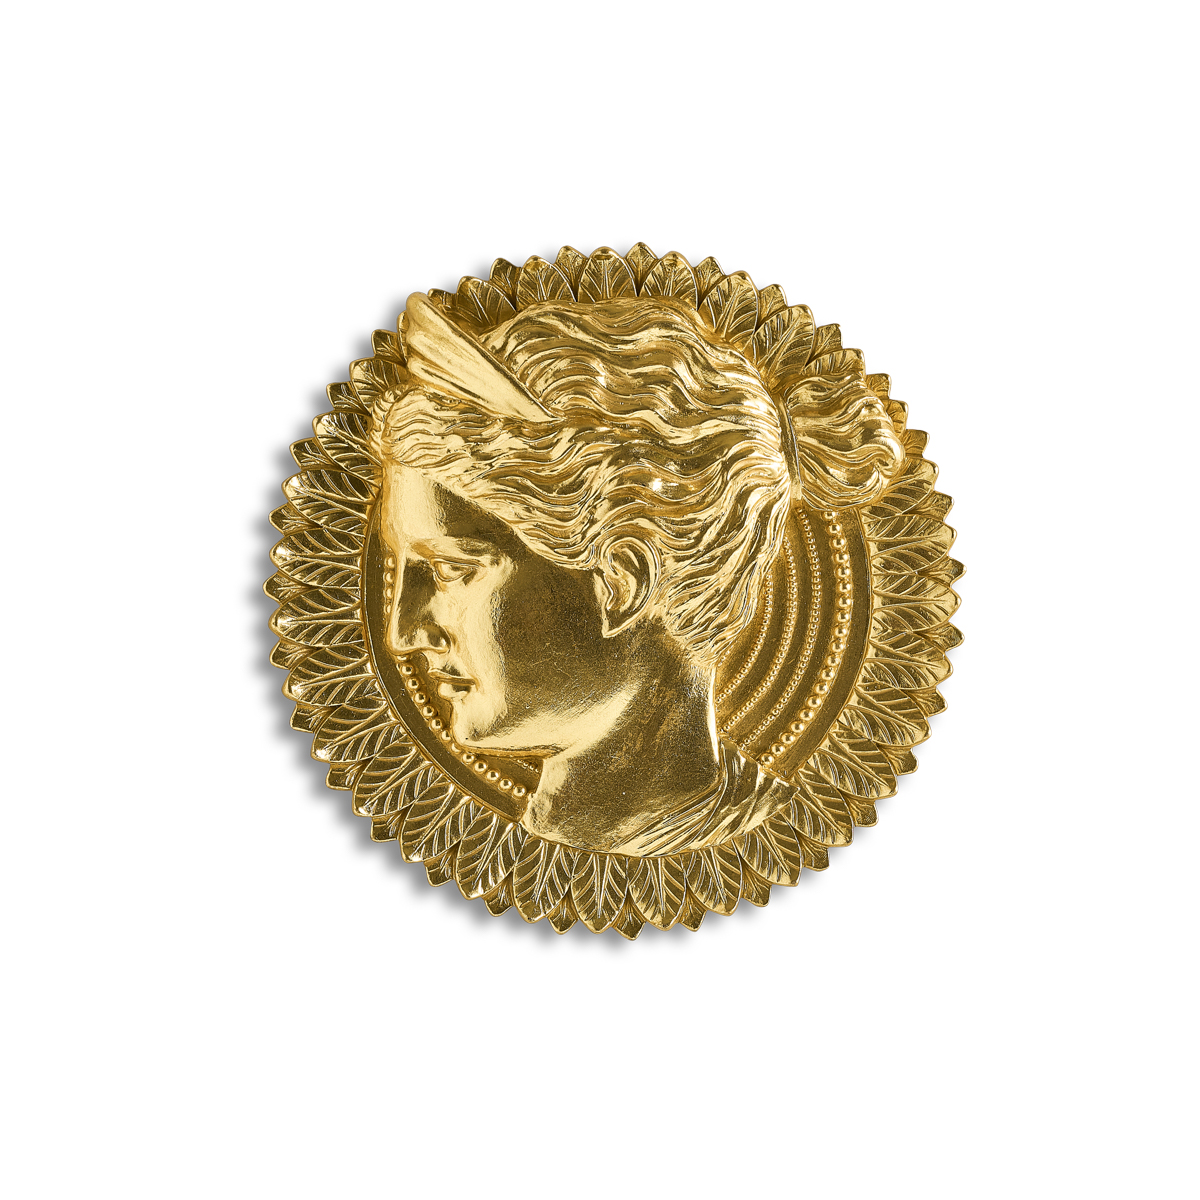 Diana medaglione in resina oro - 26 cm - Linea Mediterranea - Henriette